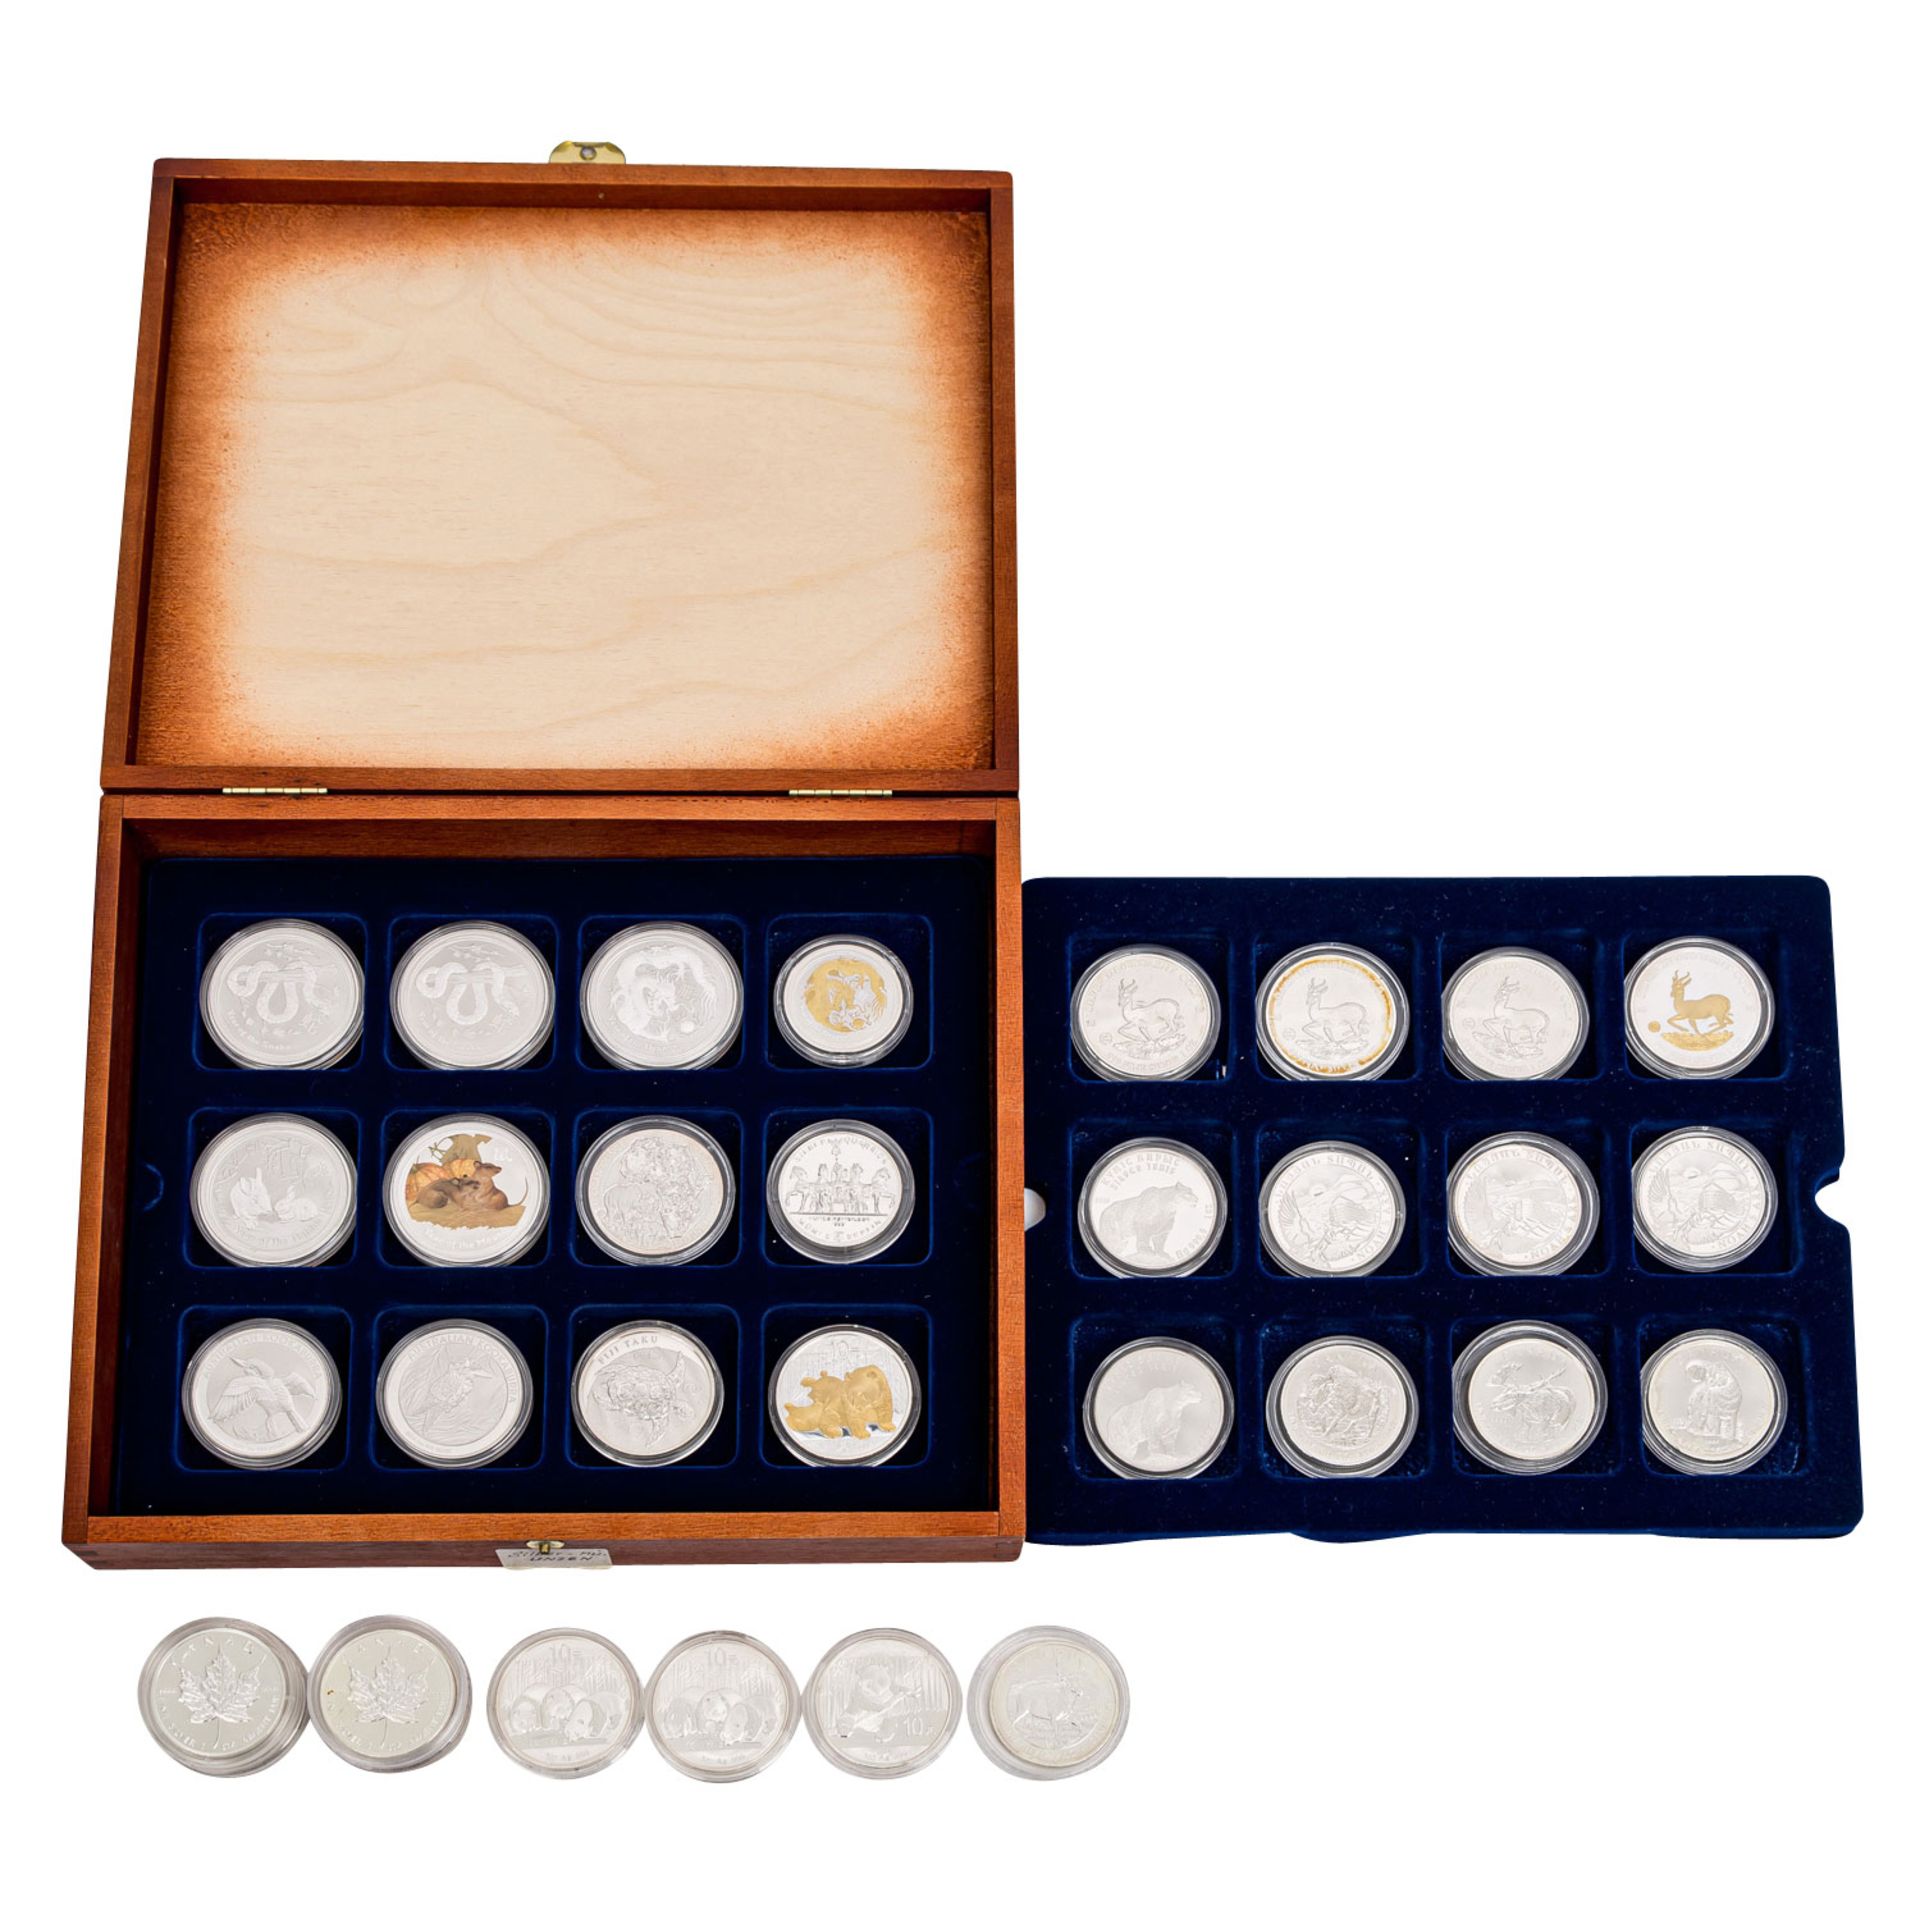 SILBERUNZEN - Holzbox mit 34 Münzen,davon 32 Unzen, 1 weitere Unze als Medaille sowie 1/2 Unze